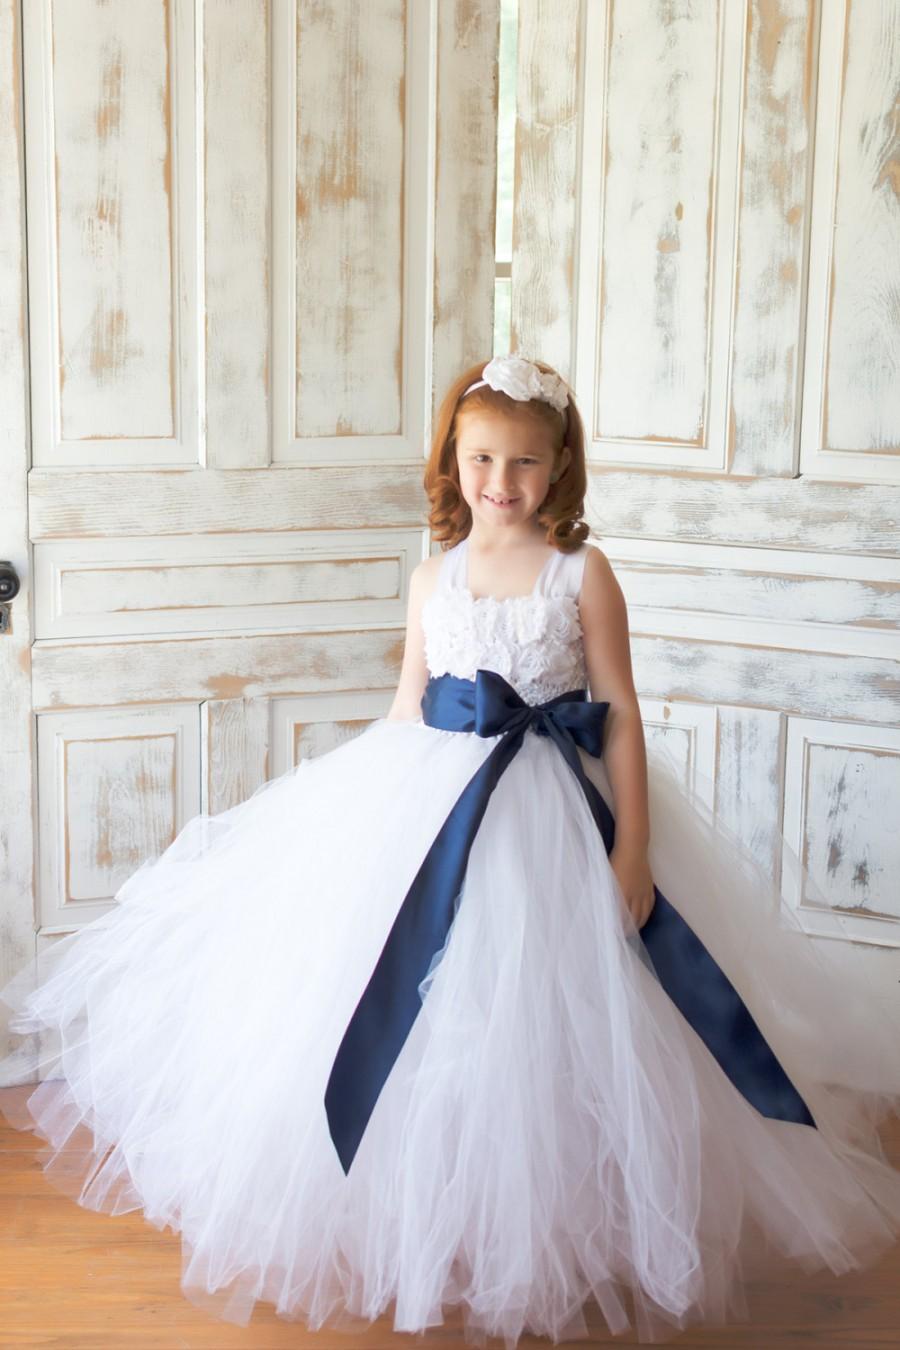 Wedding - Flower girl dress - Tulle flower girl dress - White Dress - Tulle dress-Infant/Toddler - Pageant dress - Princess dress - White flower dress